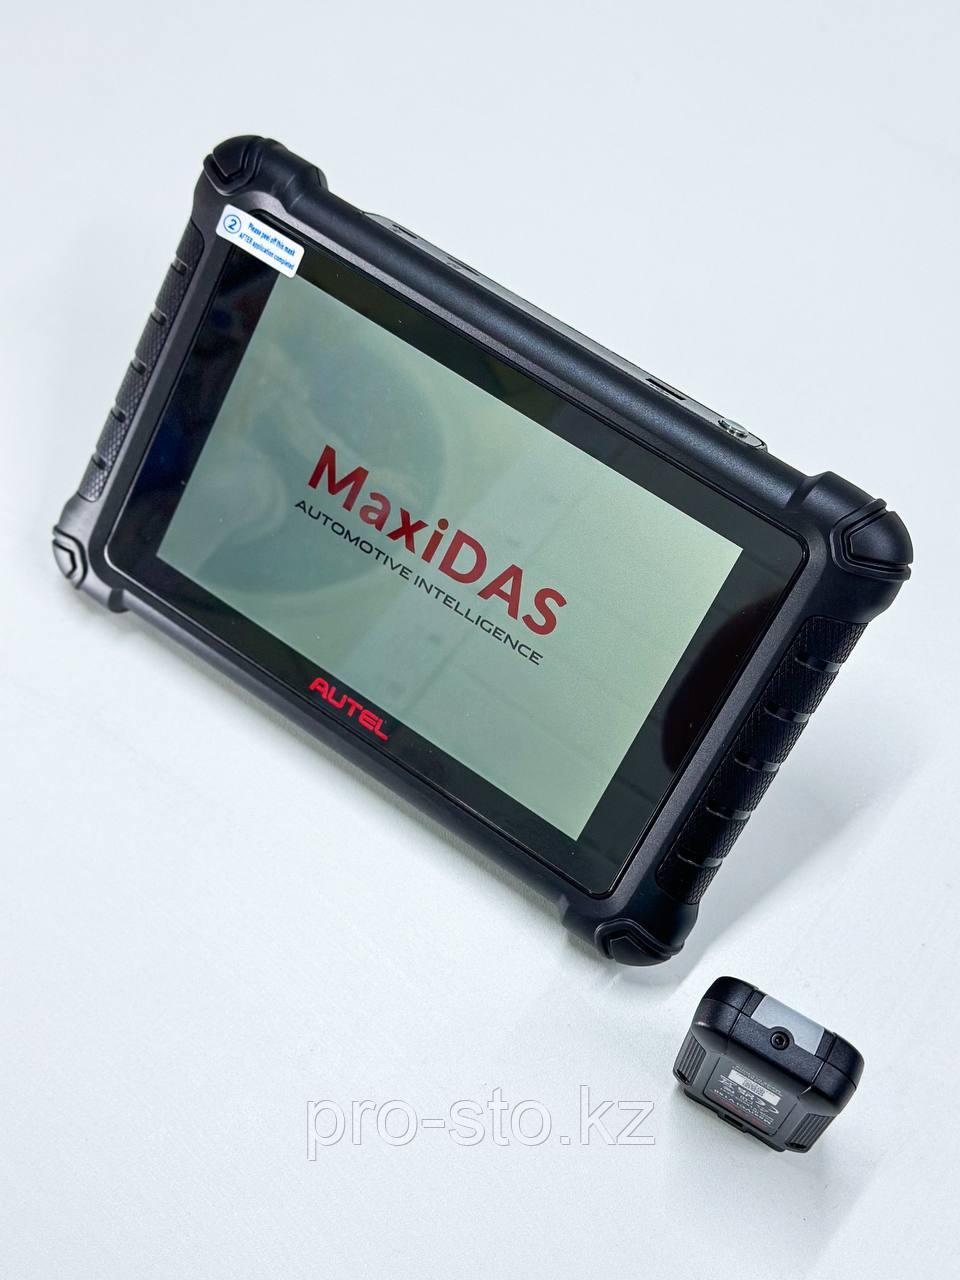 Автосканер Autel MaxiDas DS900BT